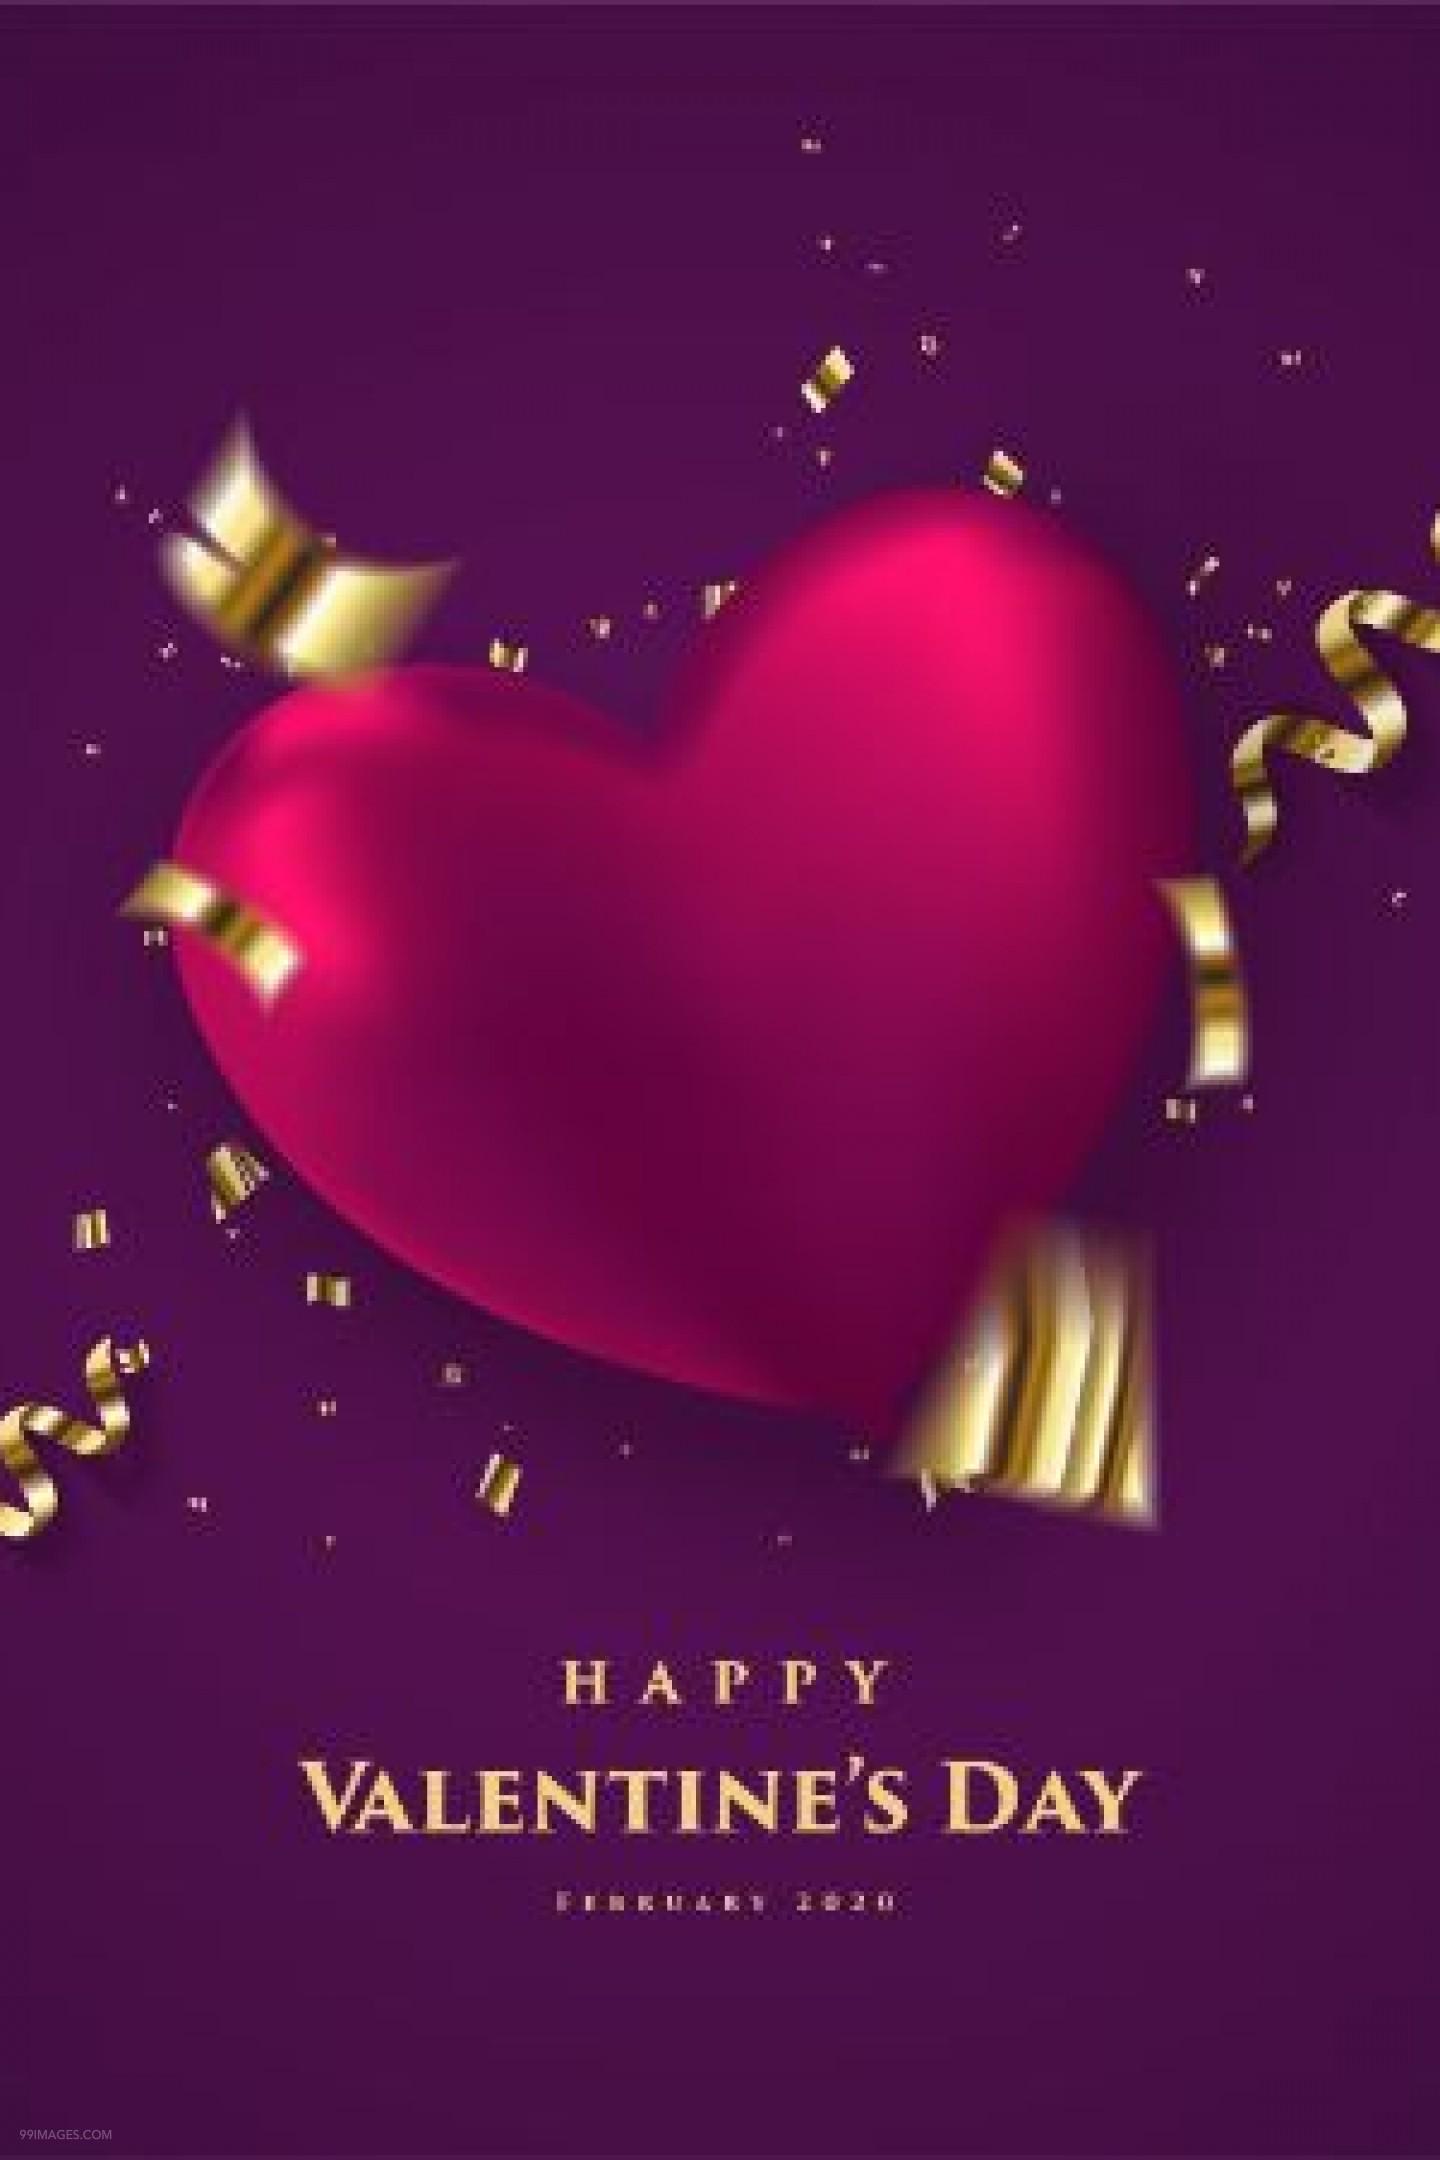 [14 February 2020] Happy Valentines Day Romantic